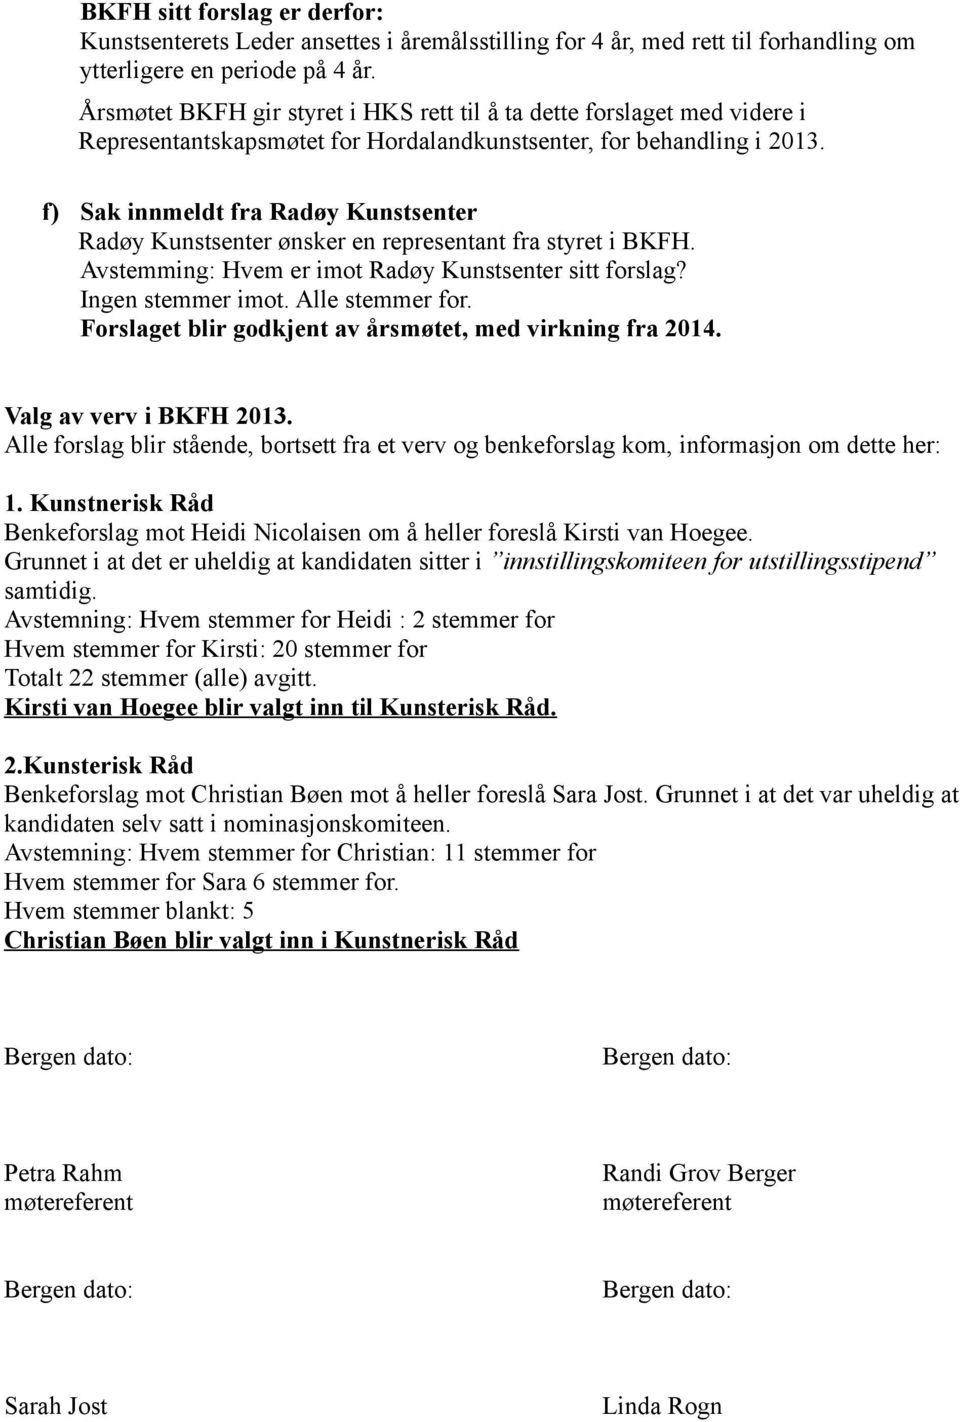 f) Sak innmeldt fra Radøy Kunstsenter Radøy Kunstsenter ønsker en representant fra styret i BKFH. Avstemming: Hvem er imot Radøy Kunstsenter sitt forslag? Ingen stemmer imot. Alle stemmer for.